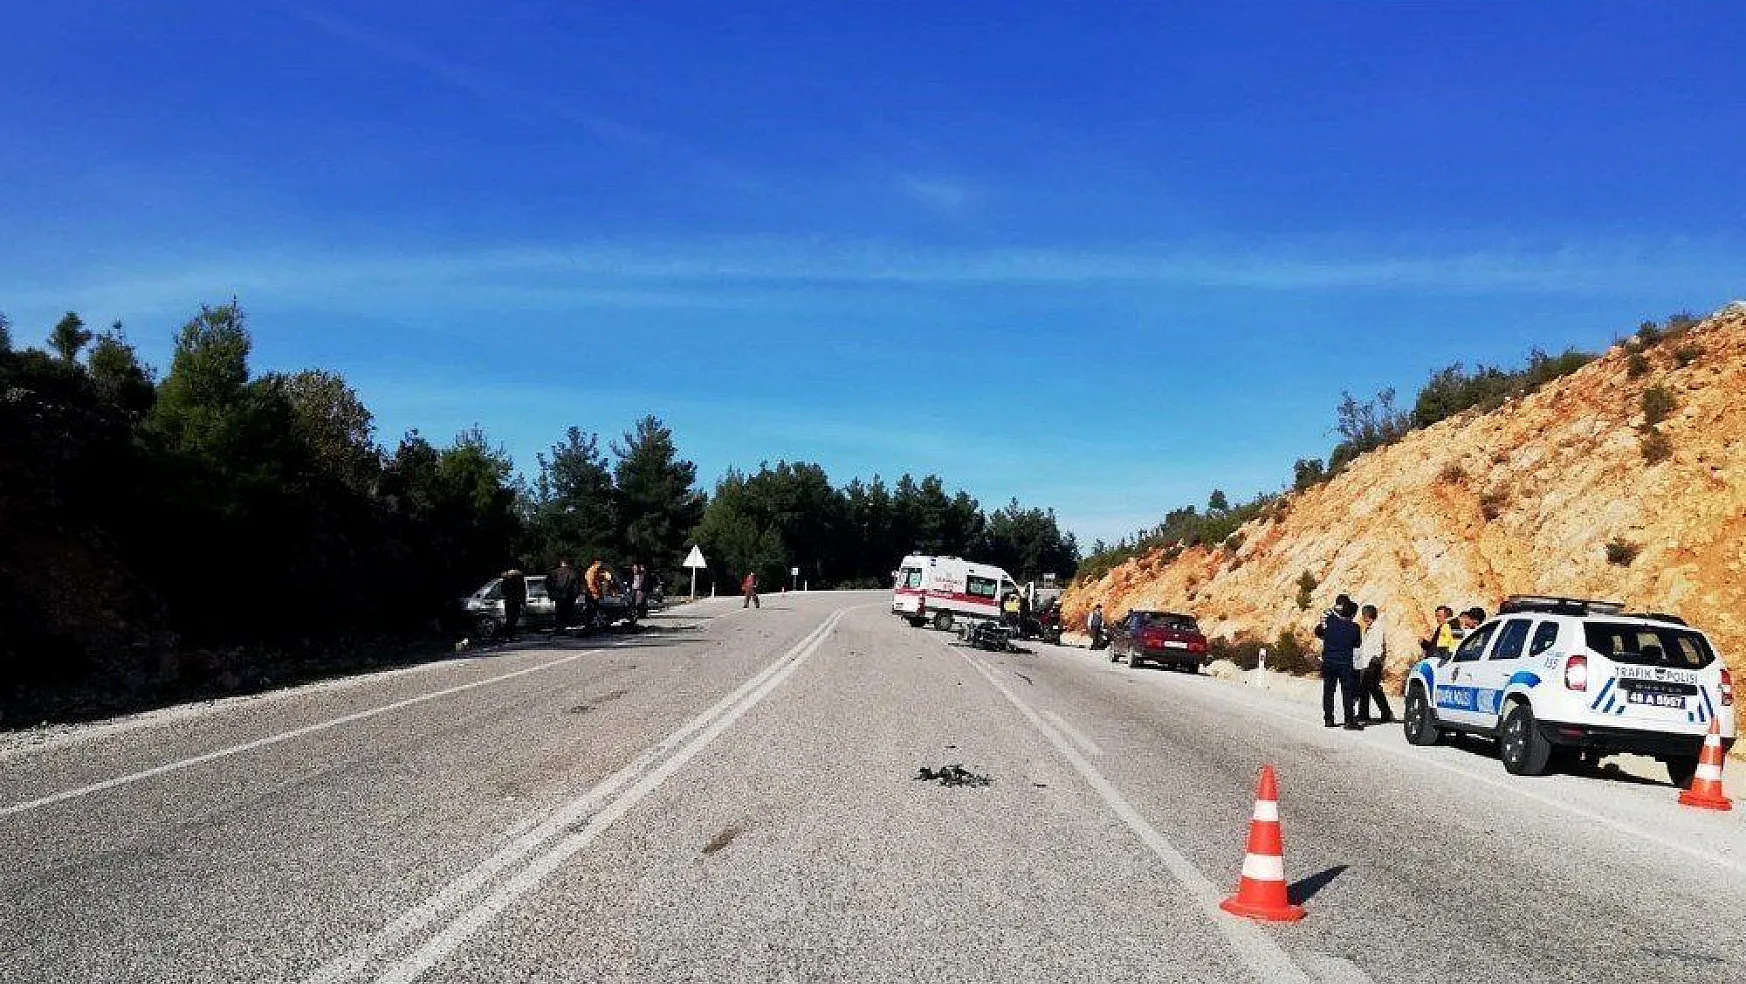 Seydikemer'de trafik kazası: 1 ölü, 2 yaralı